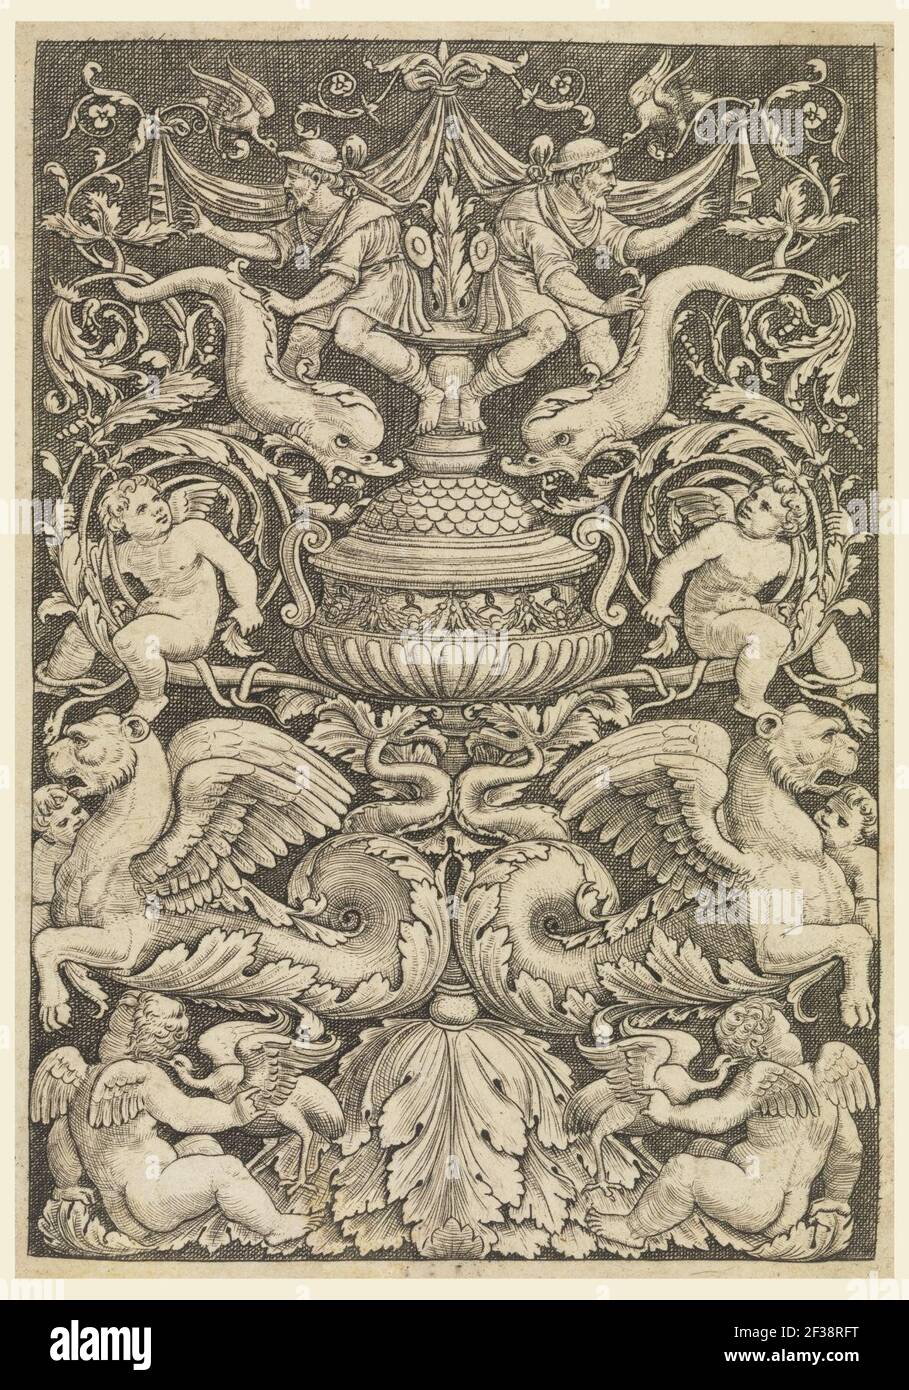 Stampa grottesca con delfini e leoni alati, 1532 Foto Stock